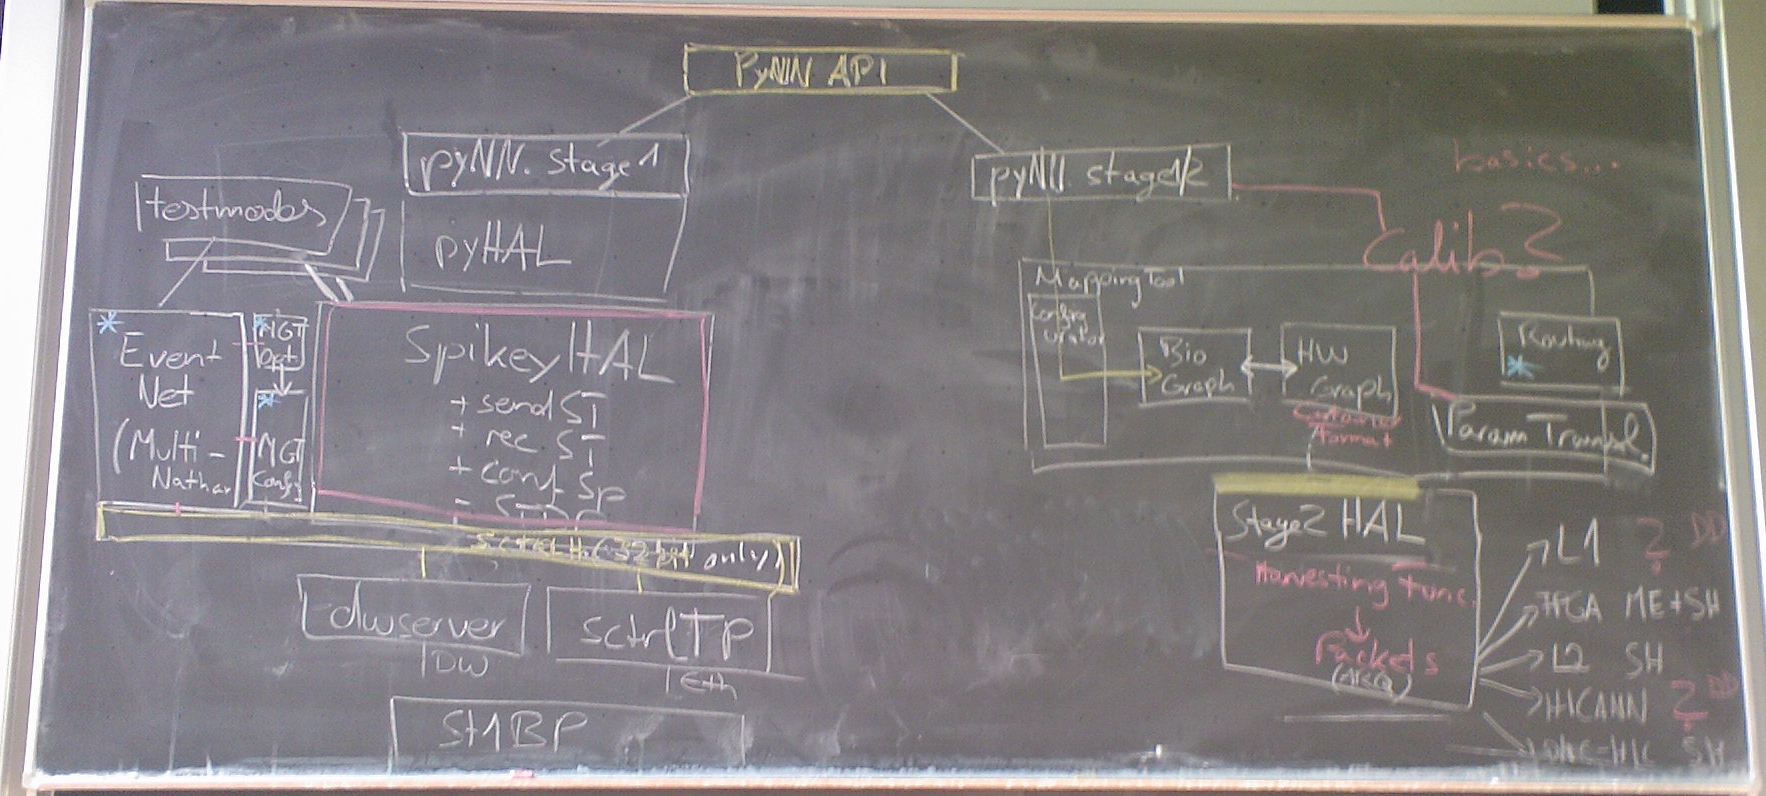 20091216 meeting blackboard.jpg